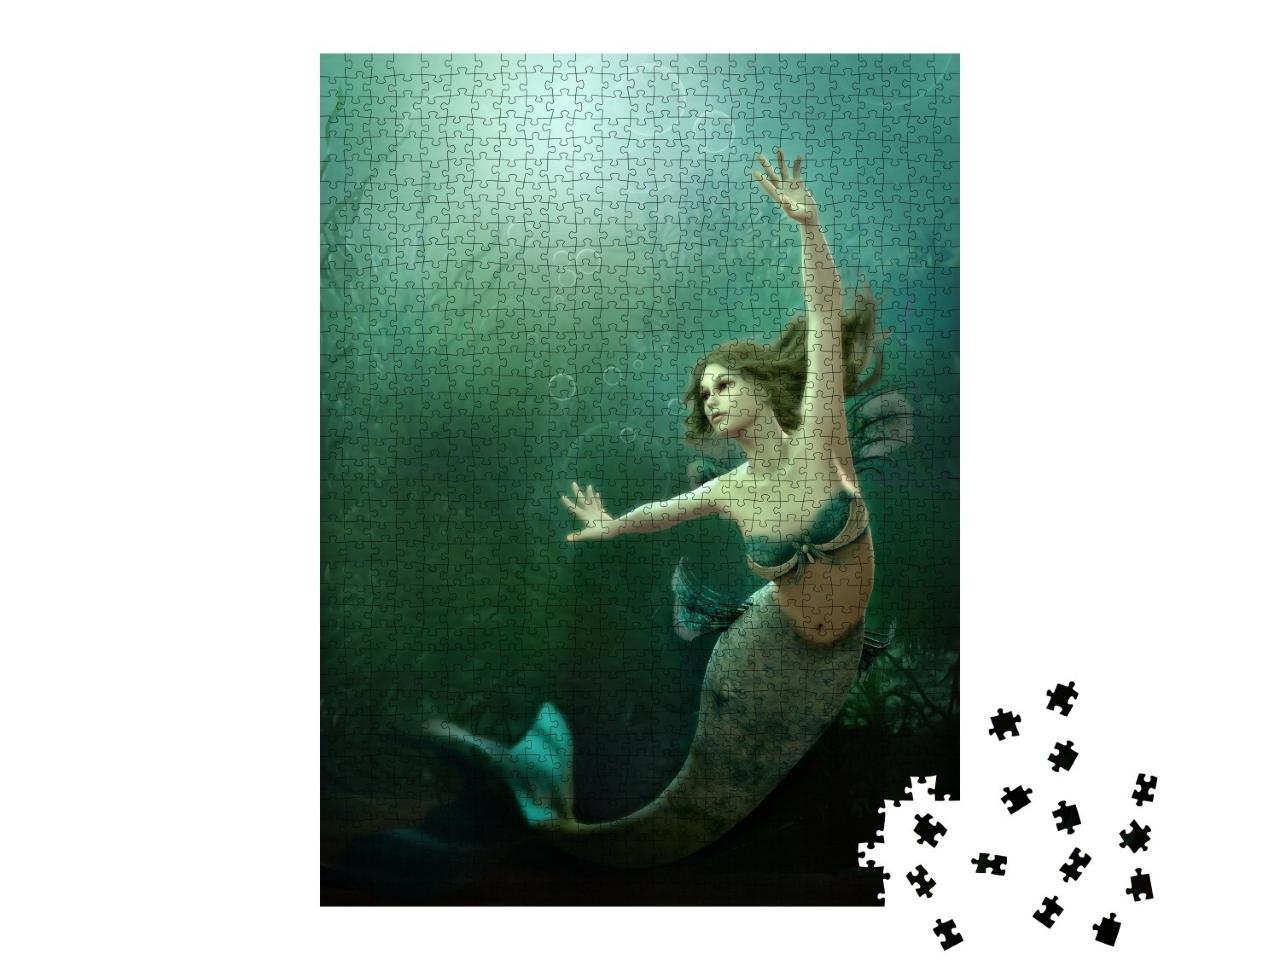 Puzzle de 1000 pièces « Sirène dansante dans une mer verte scintillante »